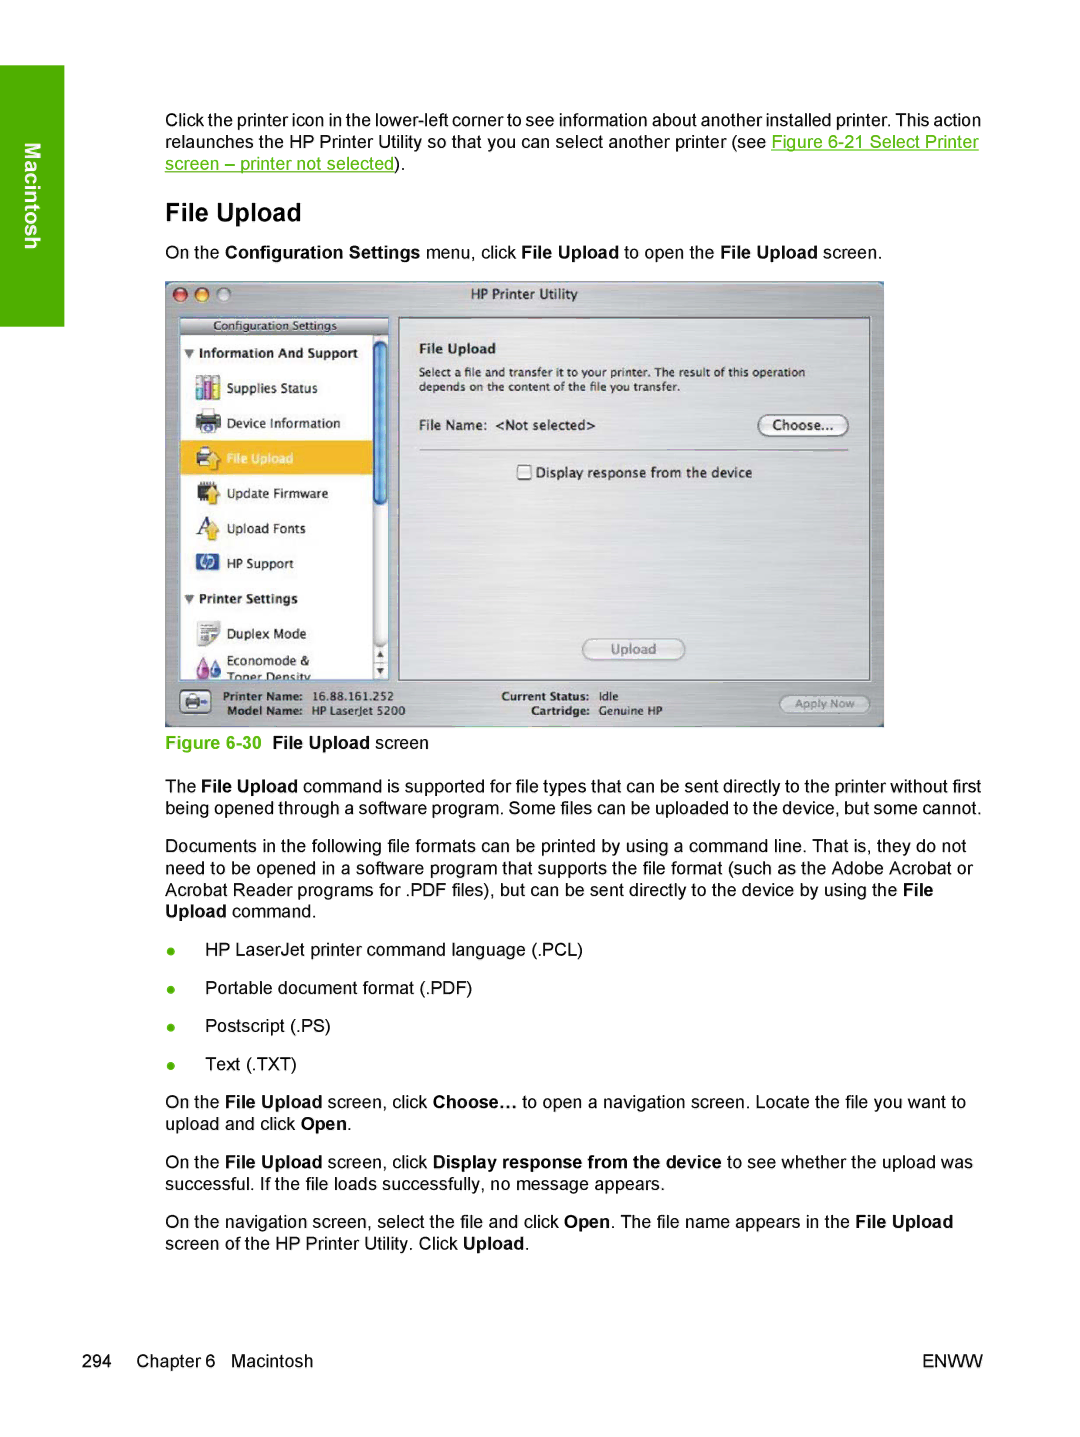 HP 5200L manual File Upload screen 